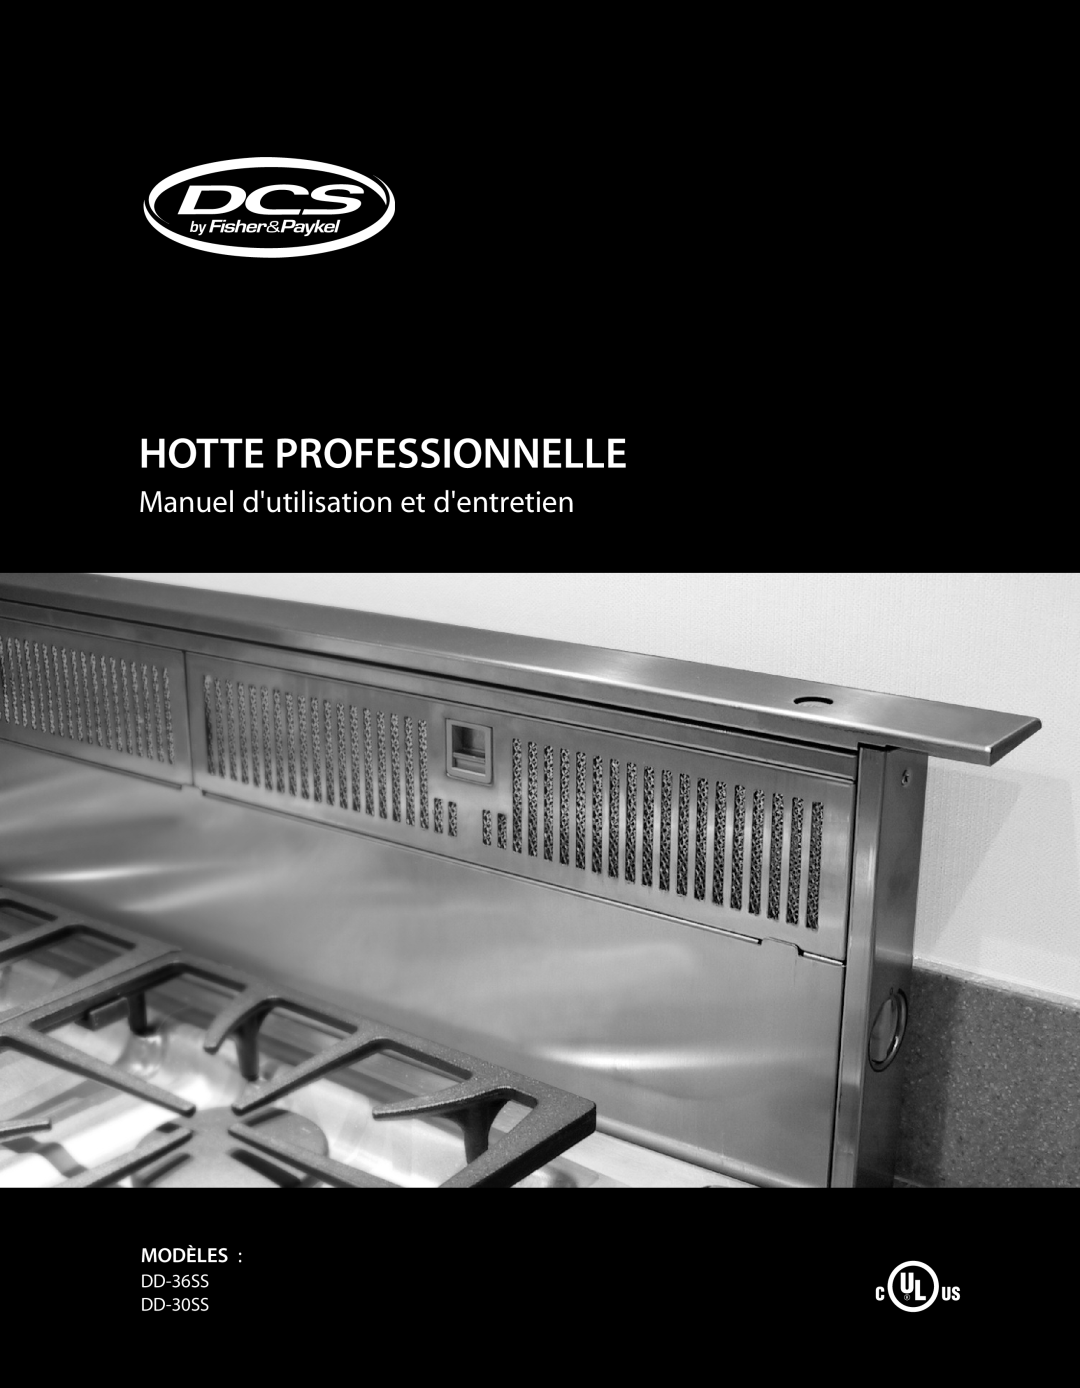 DCS manual Hotte Professionnelle, Manuel dutilisation et dentretien, Modèles, DD-36SS DD-30SS 